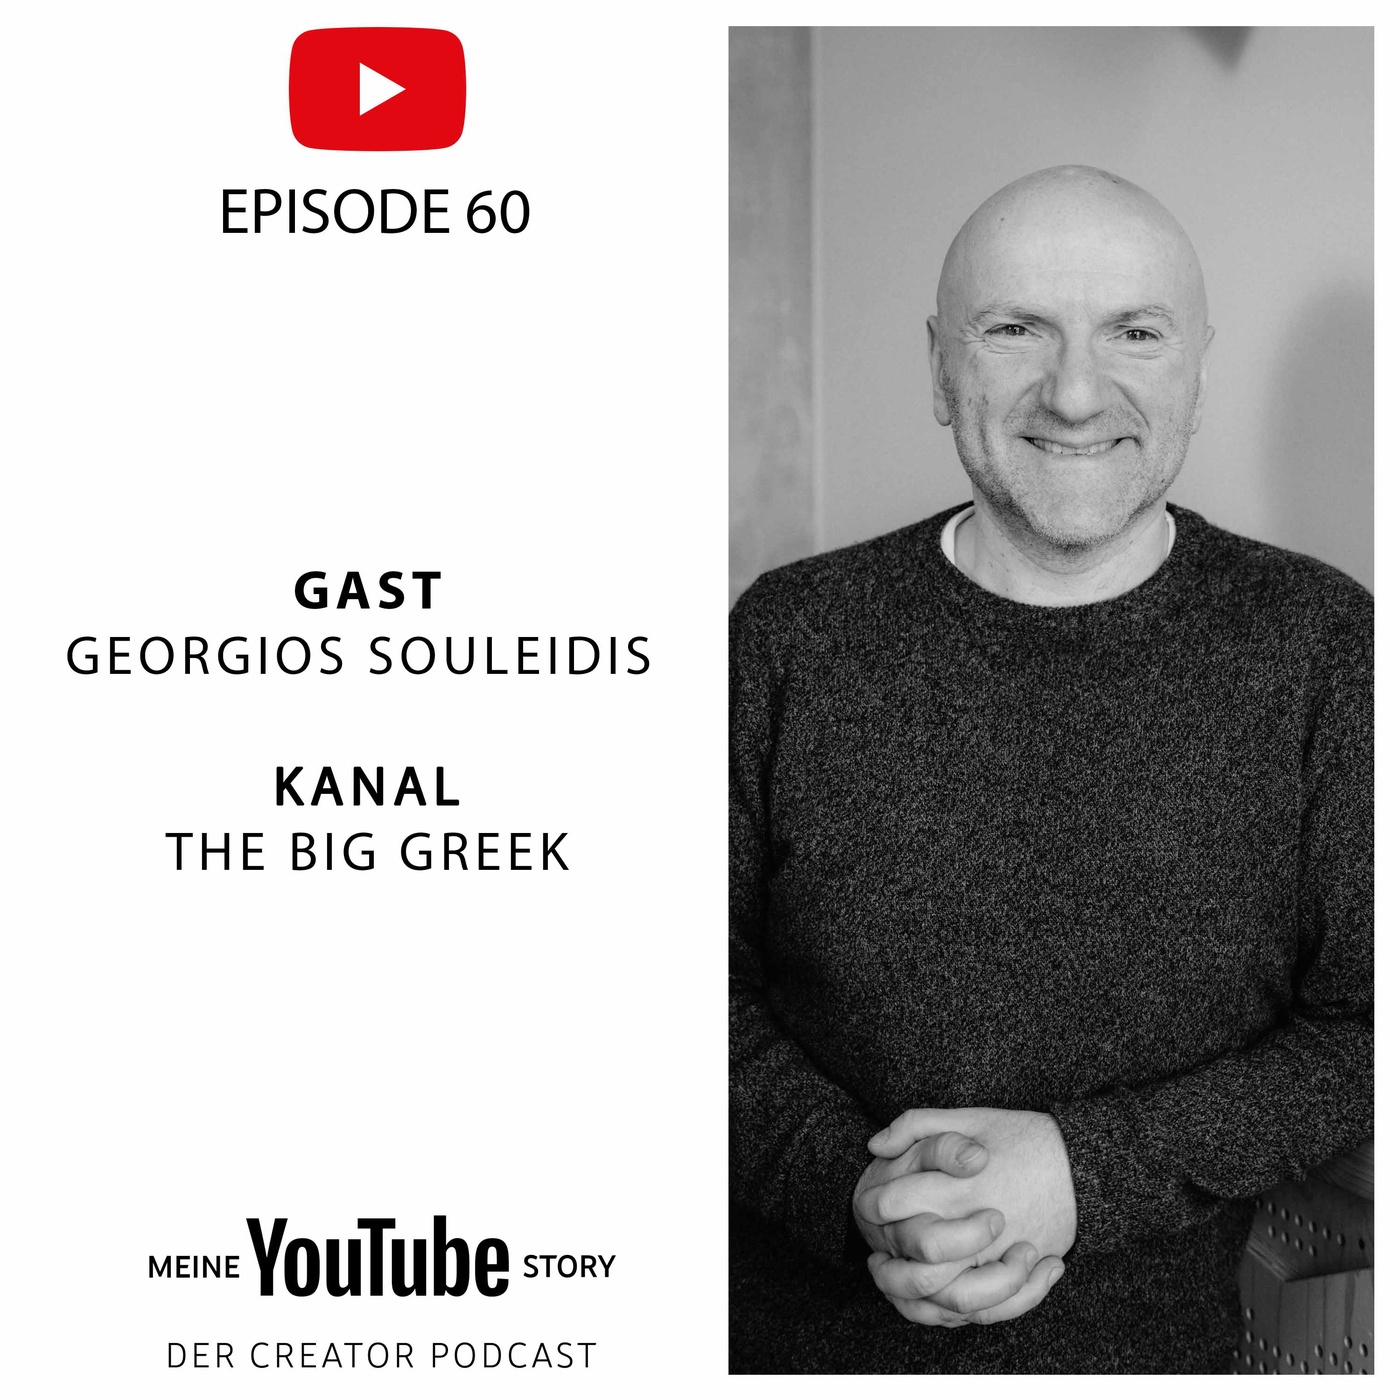 The Big Greek: Mit Schach-Videos auf 150.000 Abos